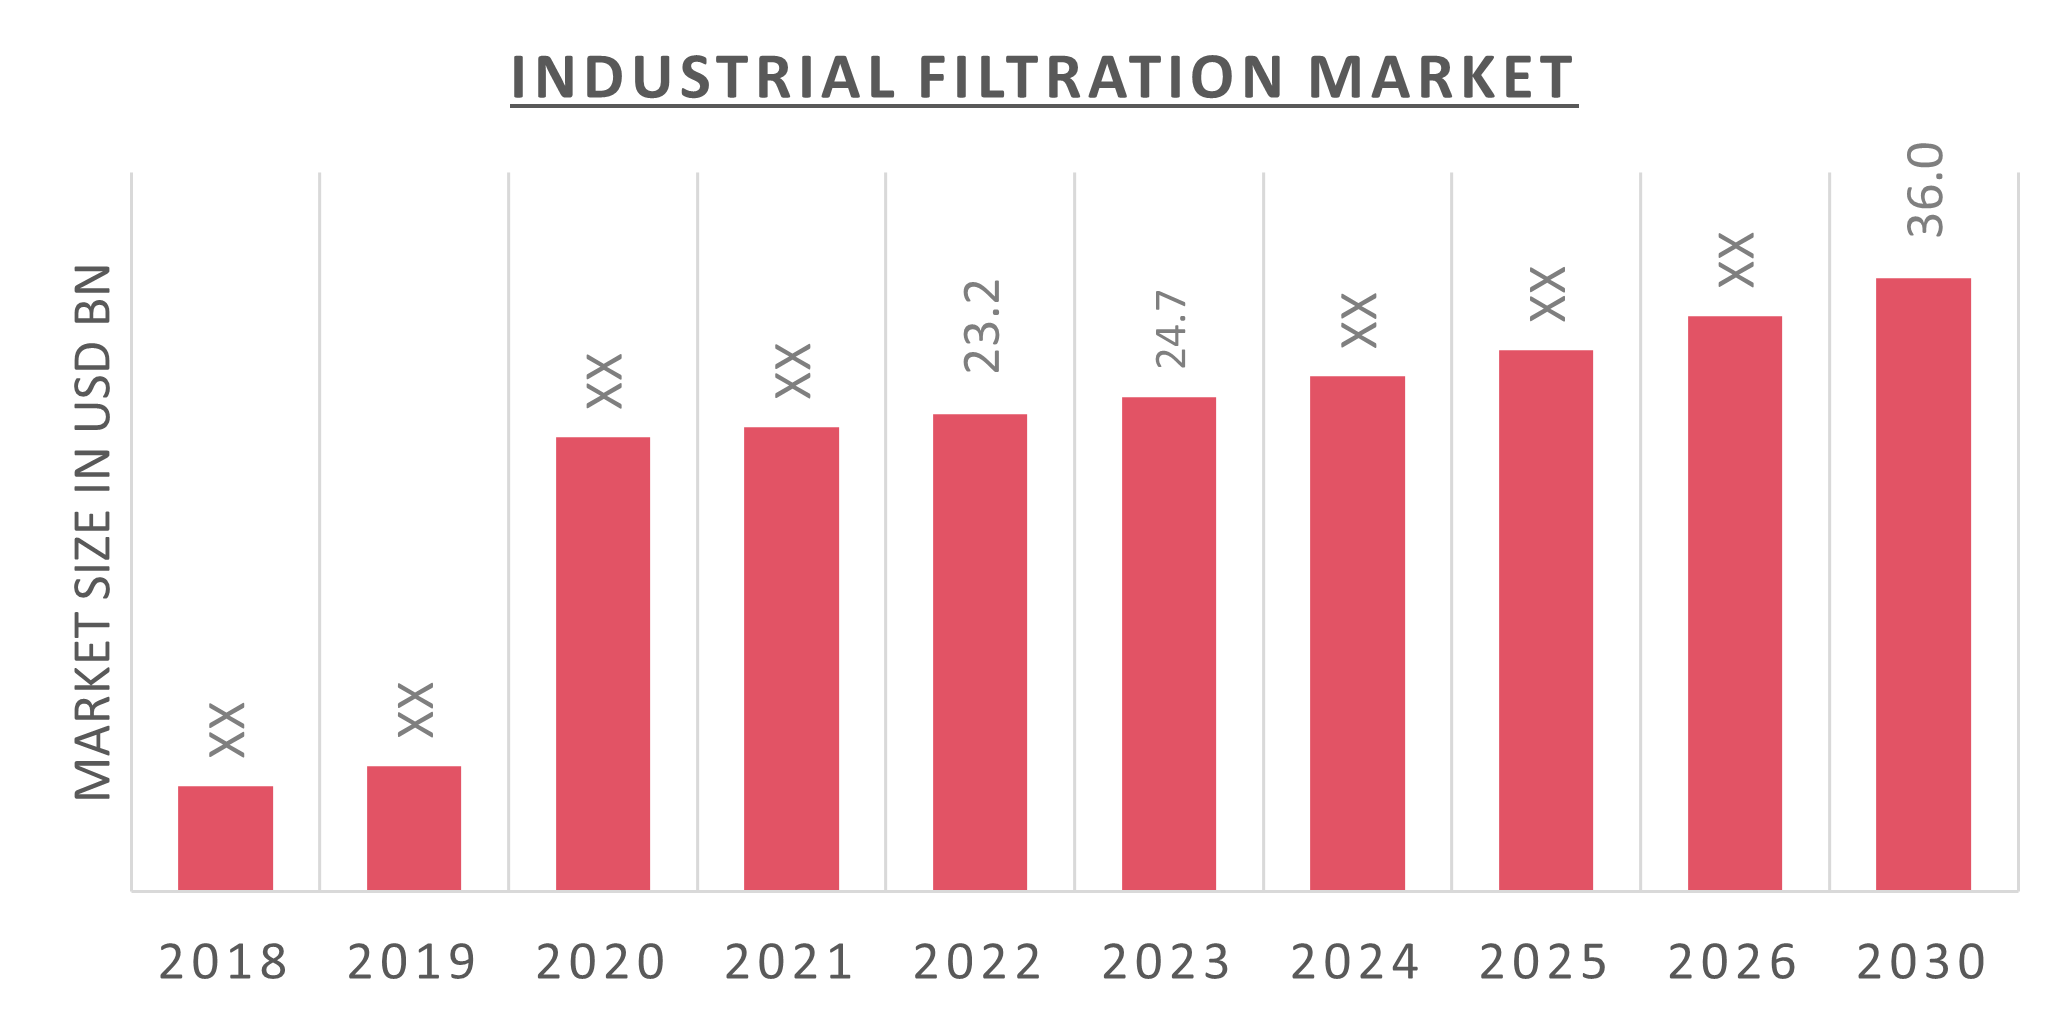 Global Industrial Filtration Market